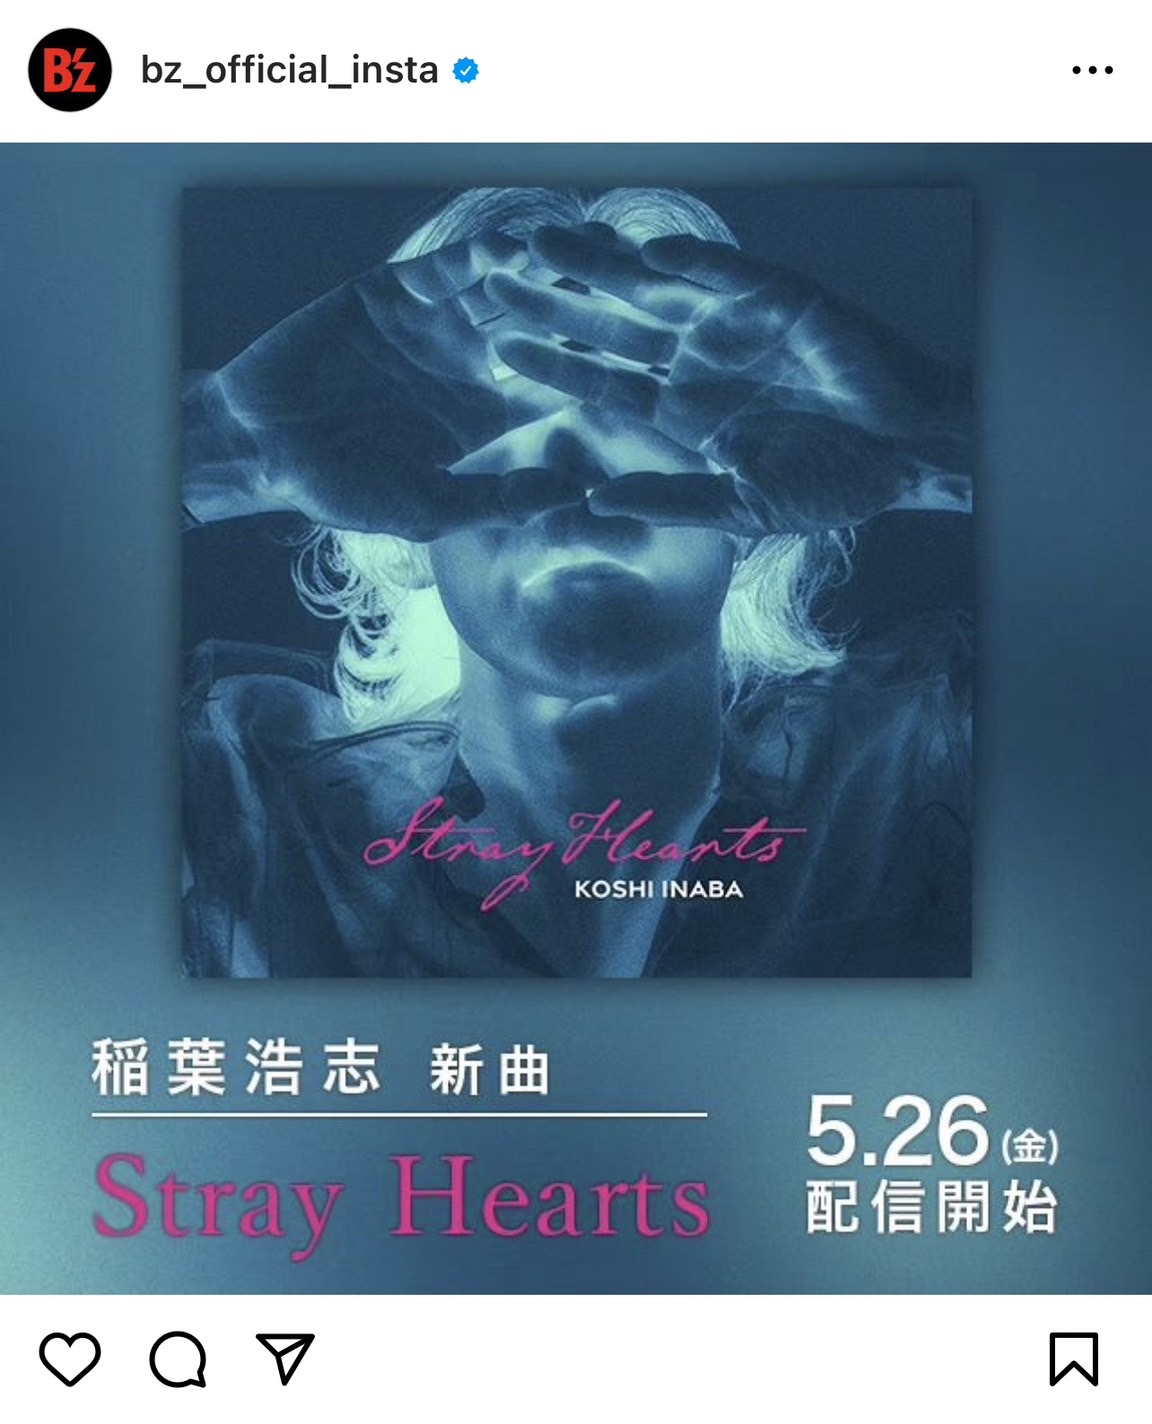 稲葉浩志「Stray Hearts」のリリースを知らせるB'z公式Instagramのジャケット画像投稿